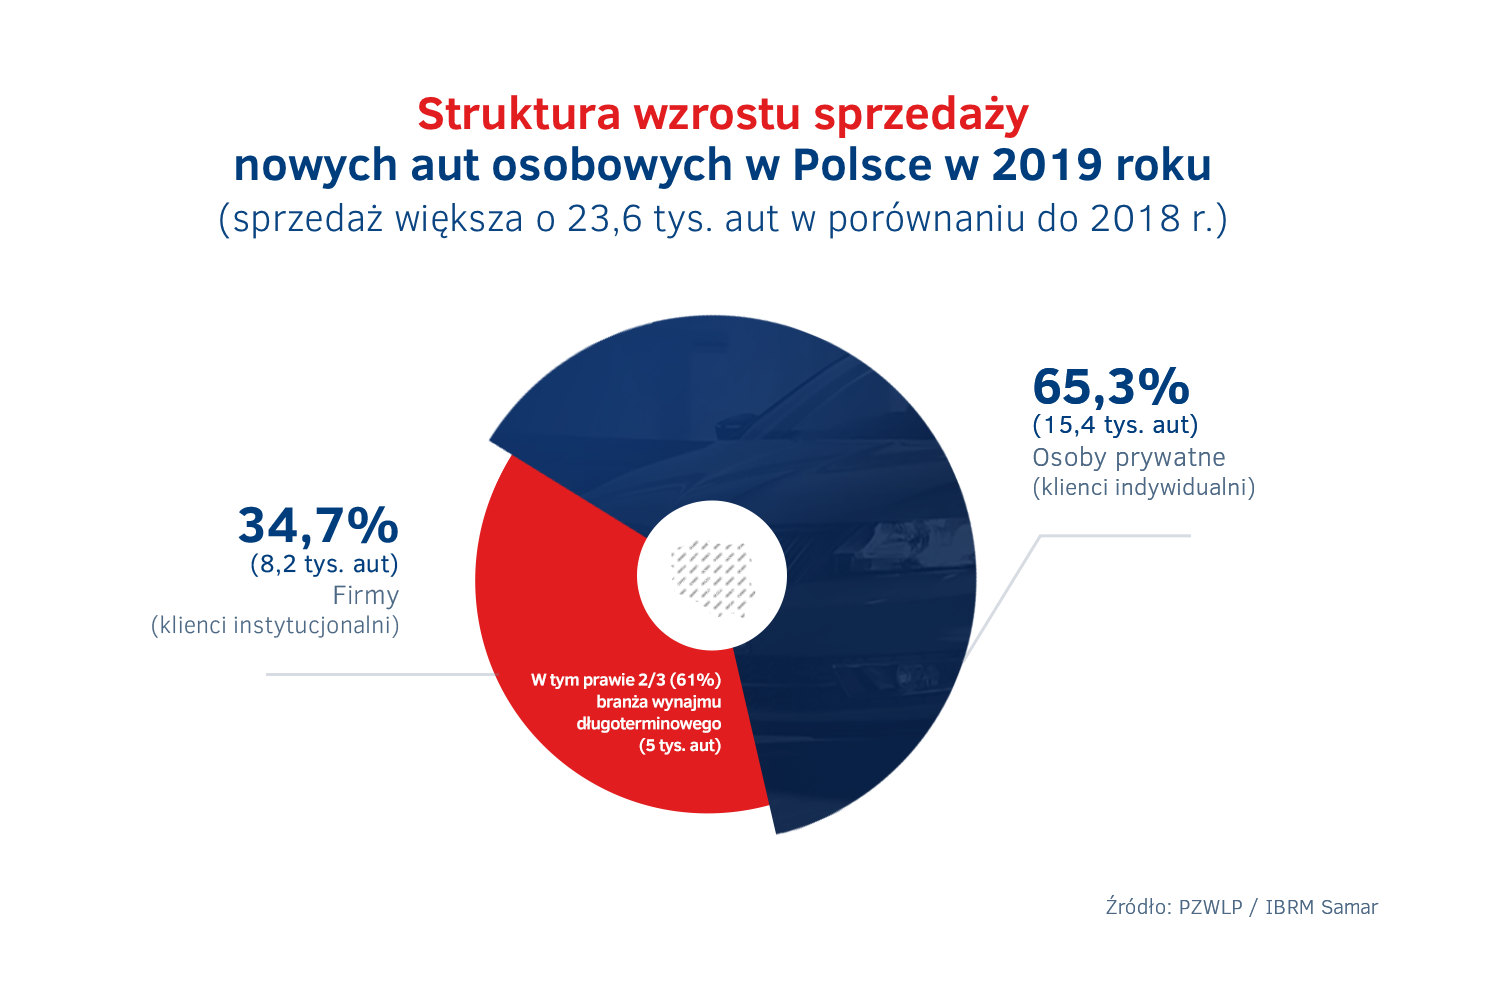 Struktura wzrostu sprzedaży nowych aut w Polsce w 2019 roku